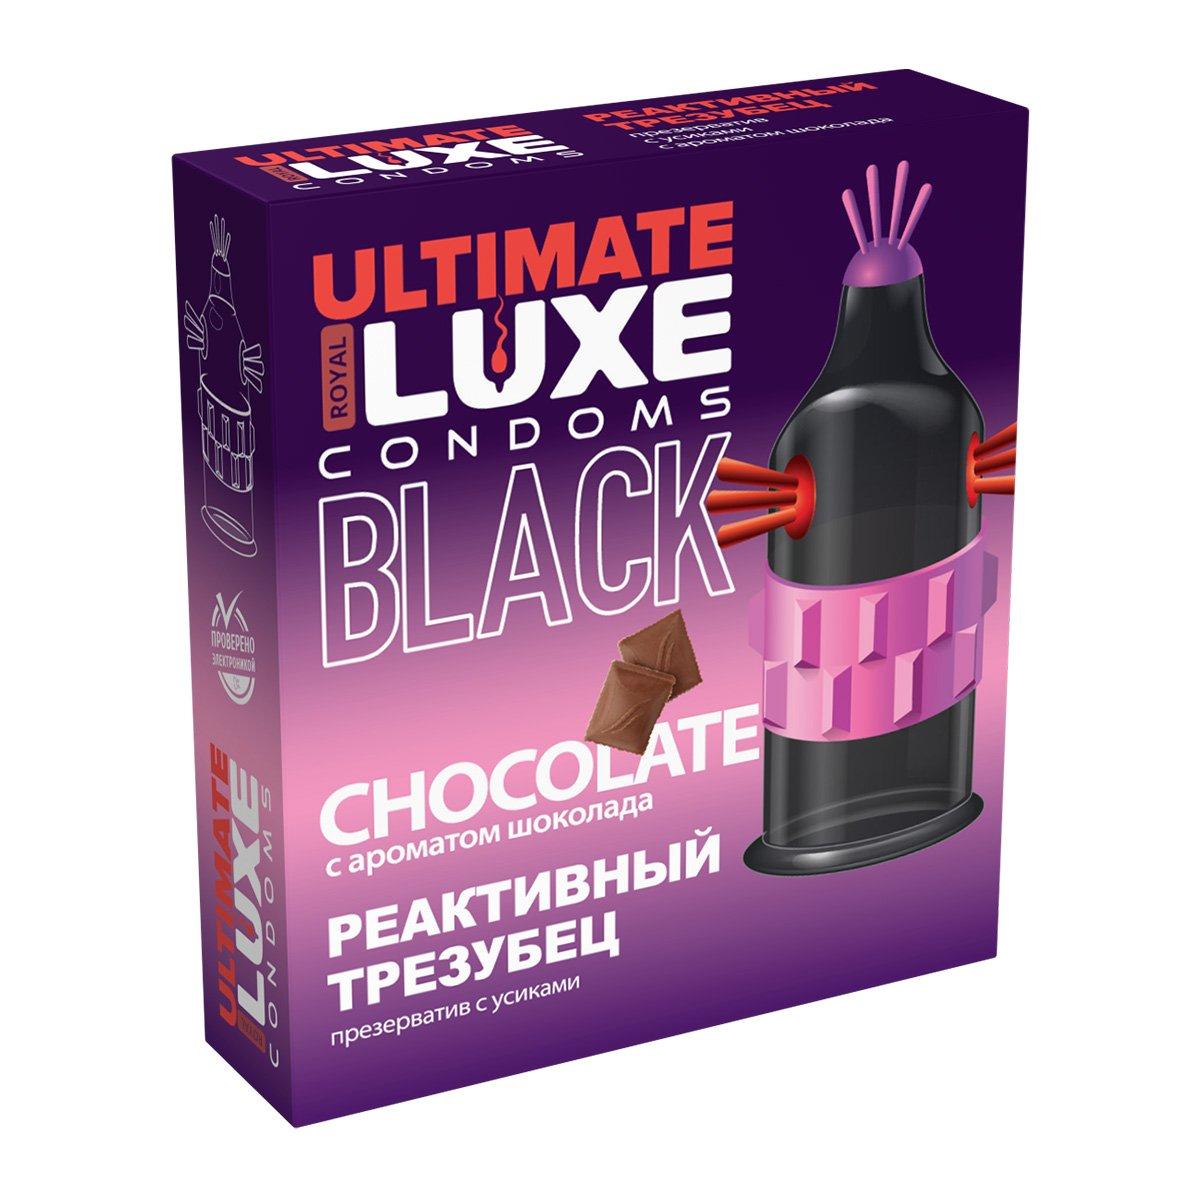 Презерватив LUXE BLACK ULTIMATE "РЕАКТИВНЫЙ ТРЕЗУБЕЦ" (с ароматом шоколада), 1 штука